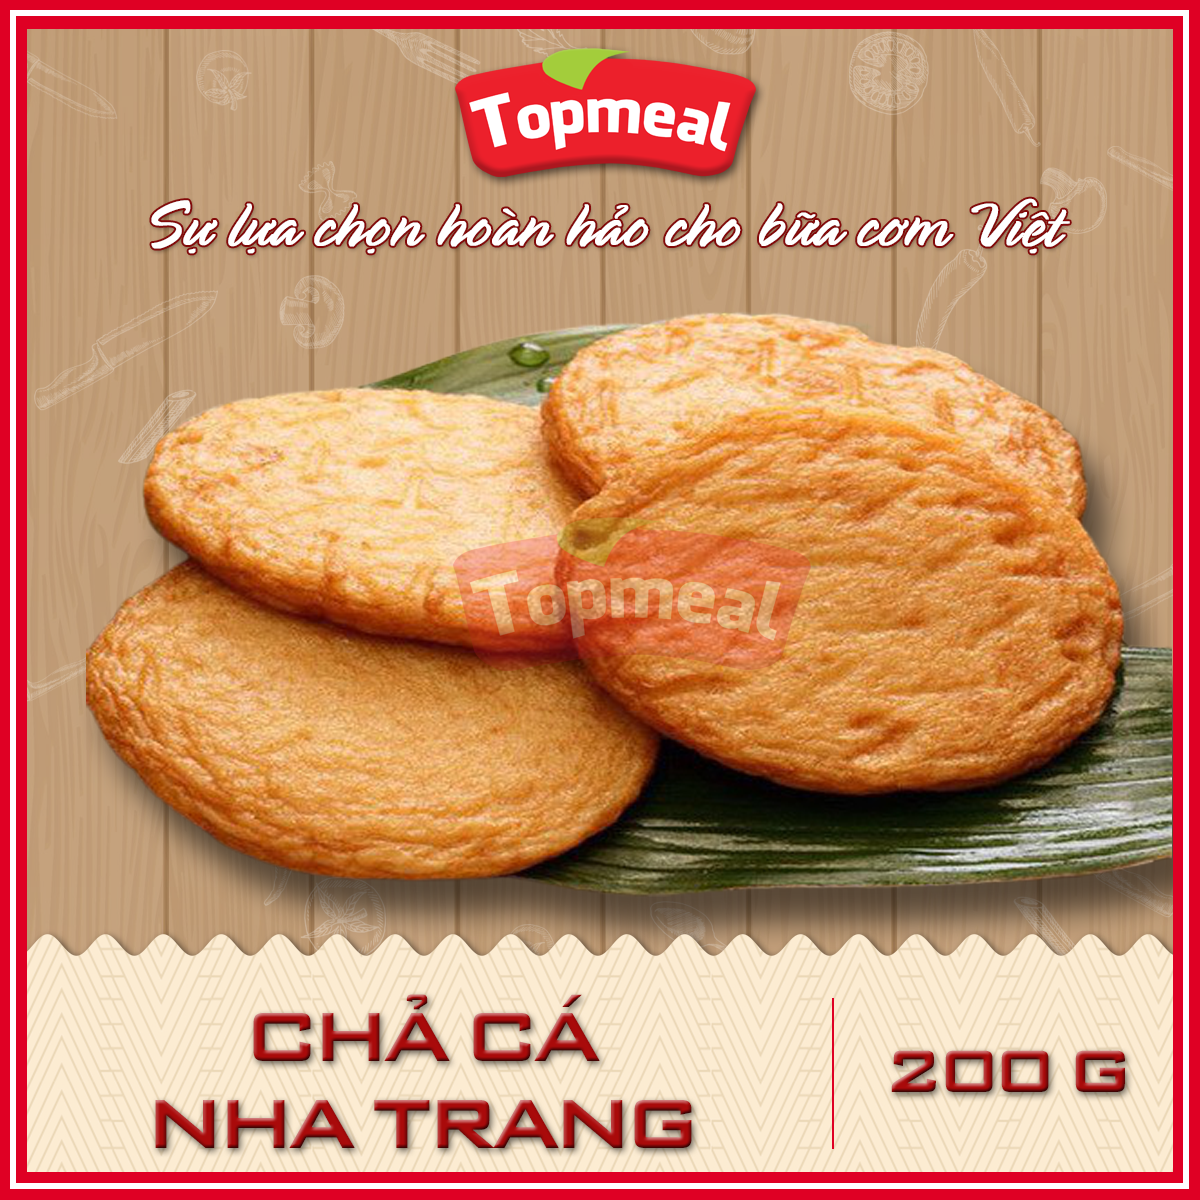 HCM – Chả cá Nha Trang (200g) – Thích hợp với các món chiên, bún cá, rim cà chua, bánh mì chả cá,… – [Giao nhanh TPHCM]